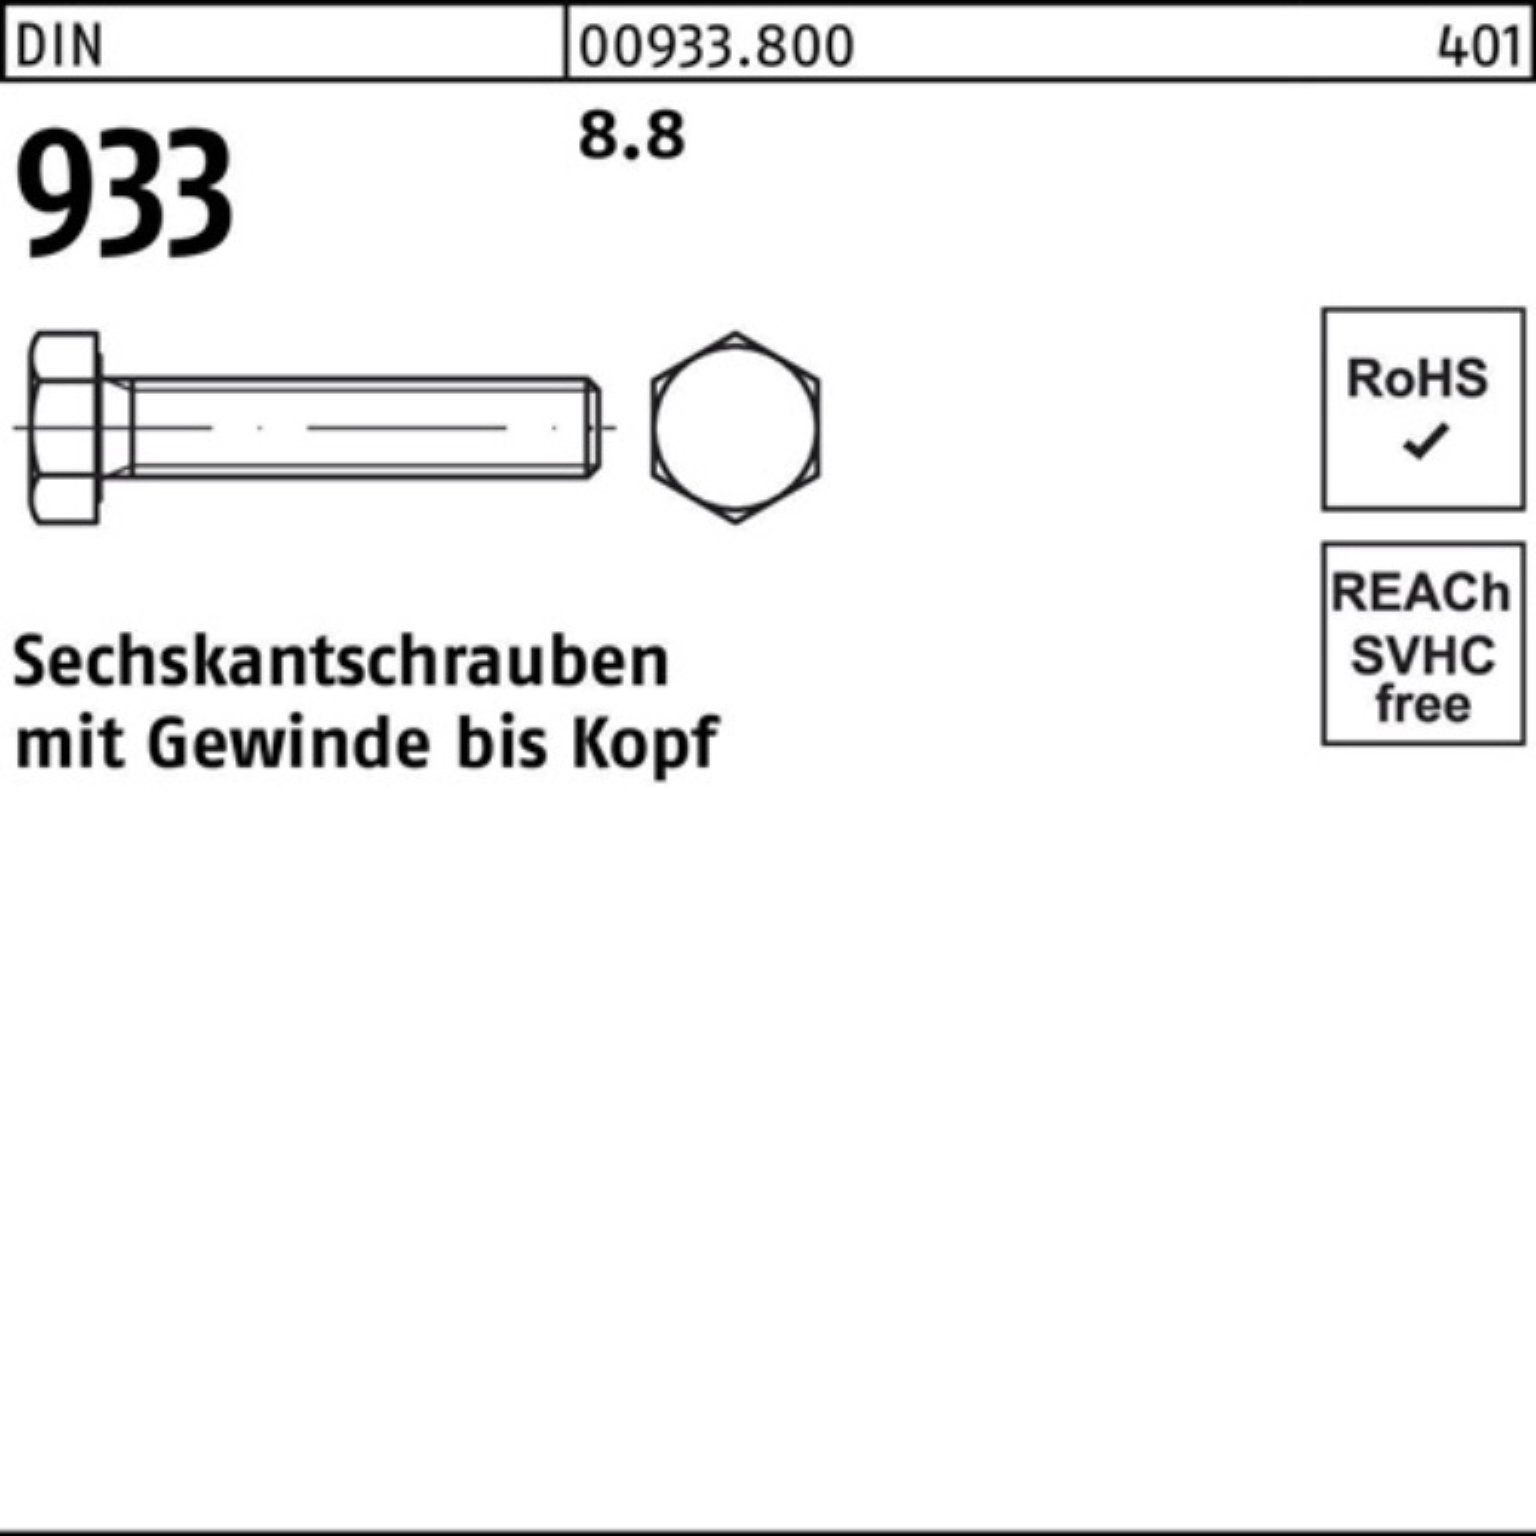 Reyher Sechskantschraube 100er Pack Sechskantschraube DIN Stück M33x 8 933 DIN 50 933 1 8.8 VG